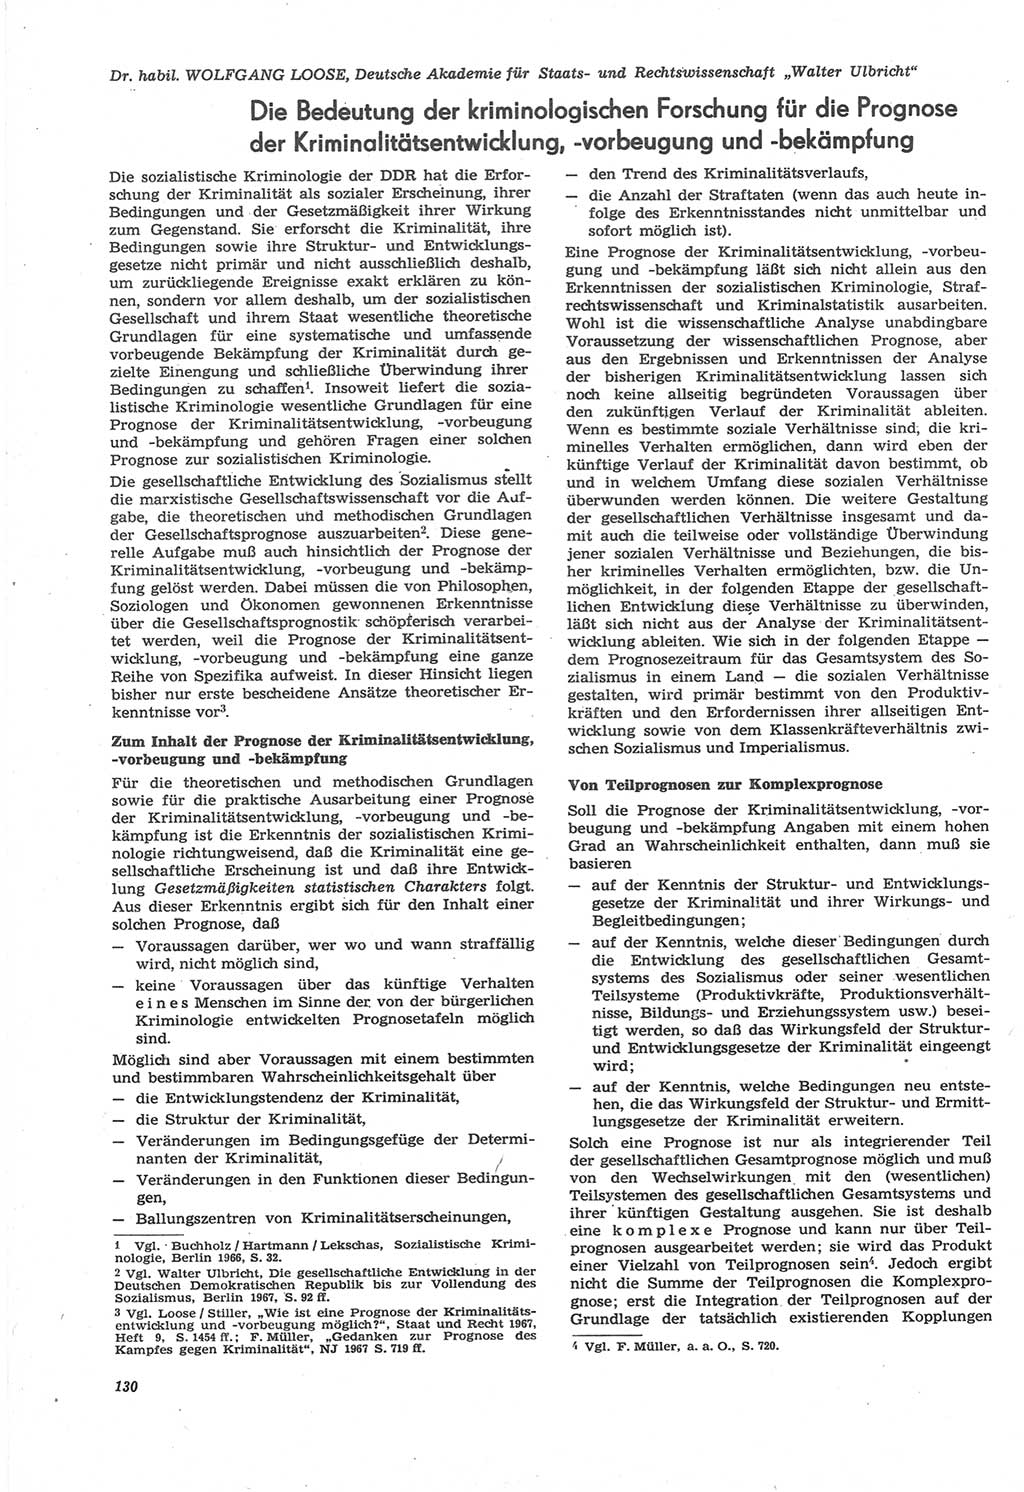 Neue Justiz (NJ), Zeitschrift für Recht und Rechtswissenschaft [Deutsche Demokratische Republik (DDR)], 22. Jahrgang 1968, Seite 130 (NJ DDR 1968, S. 130)